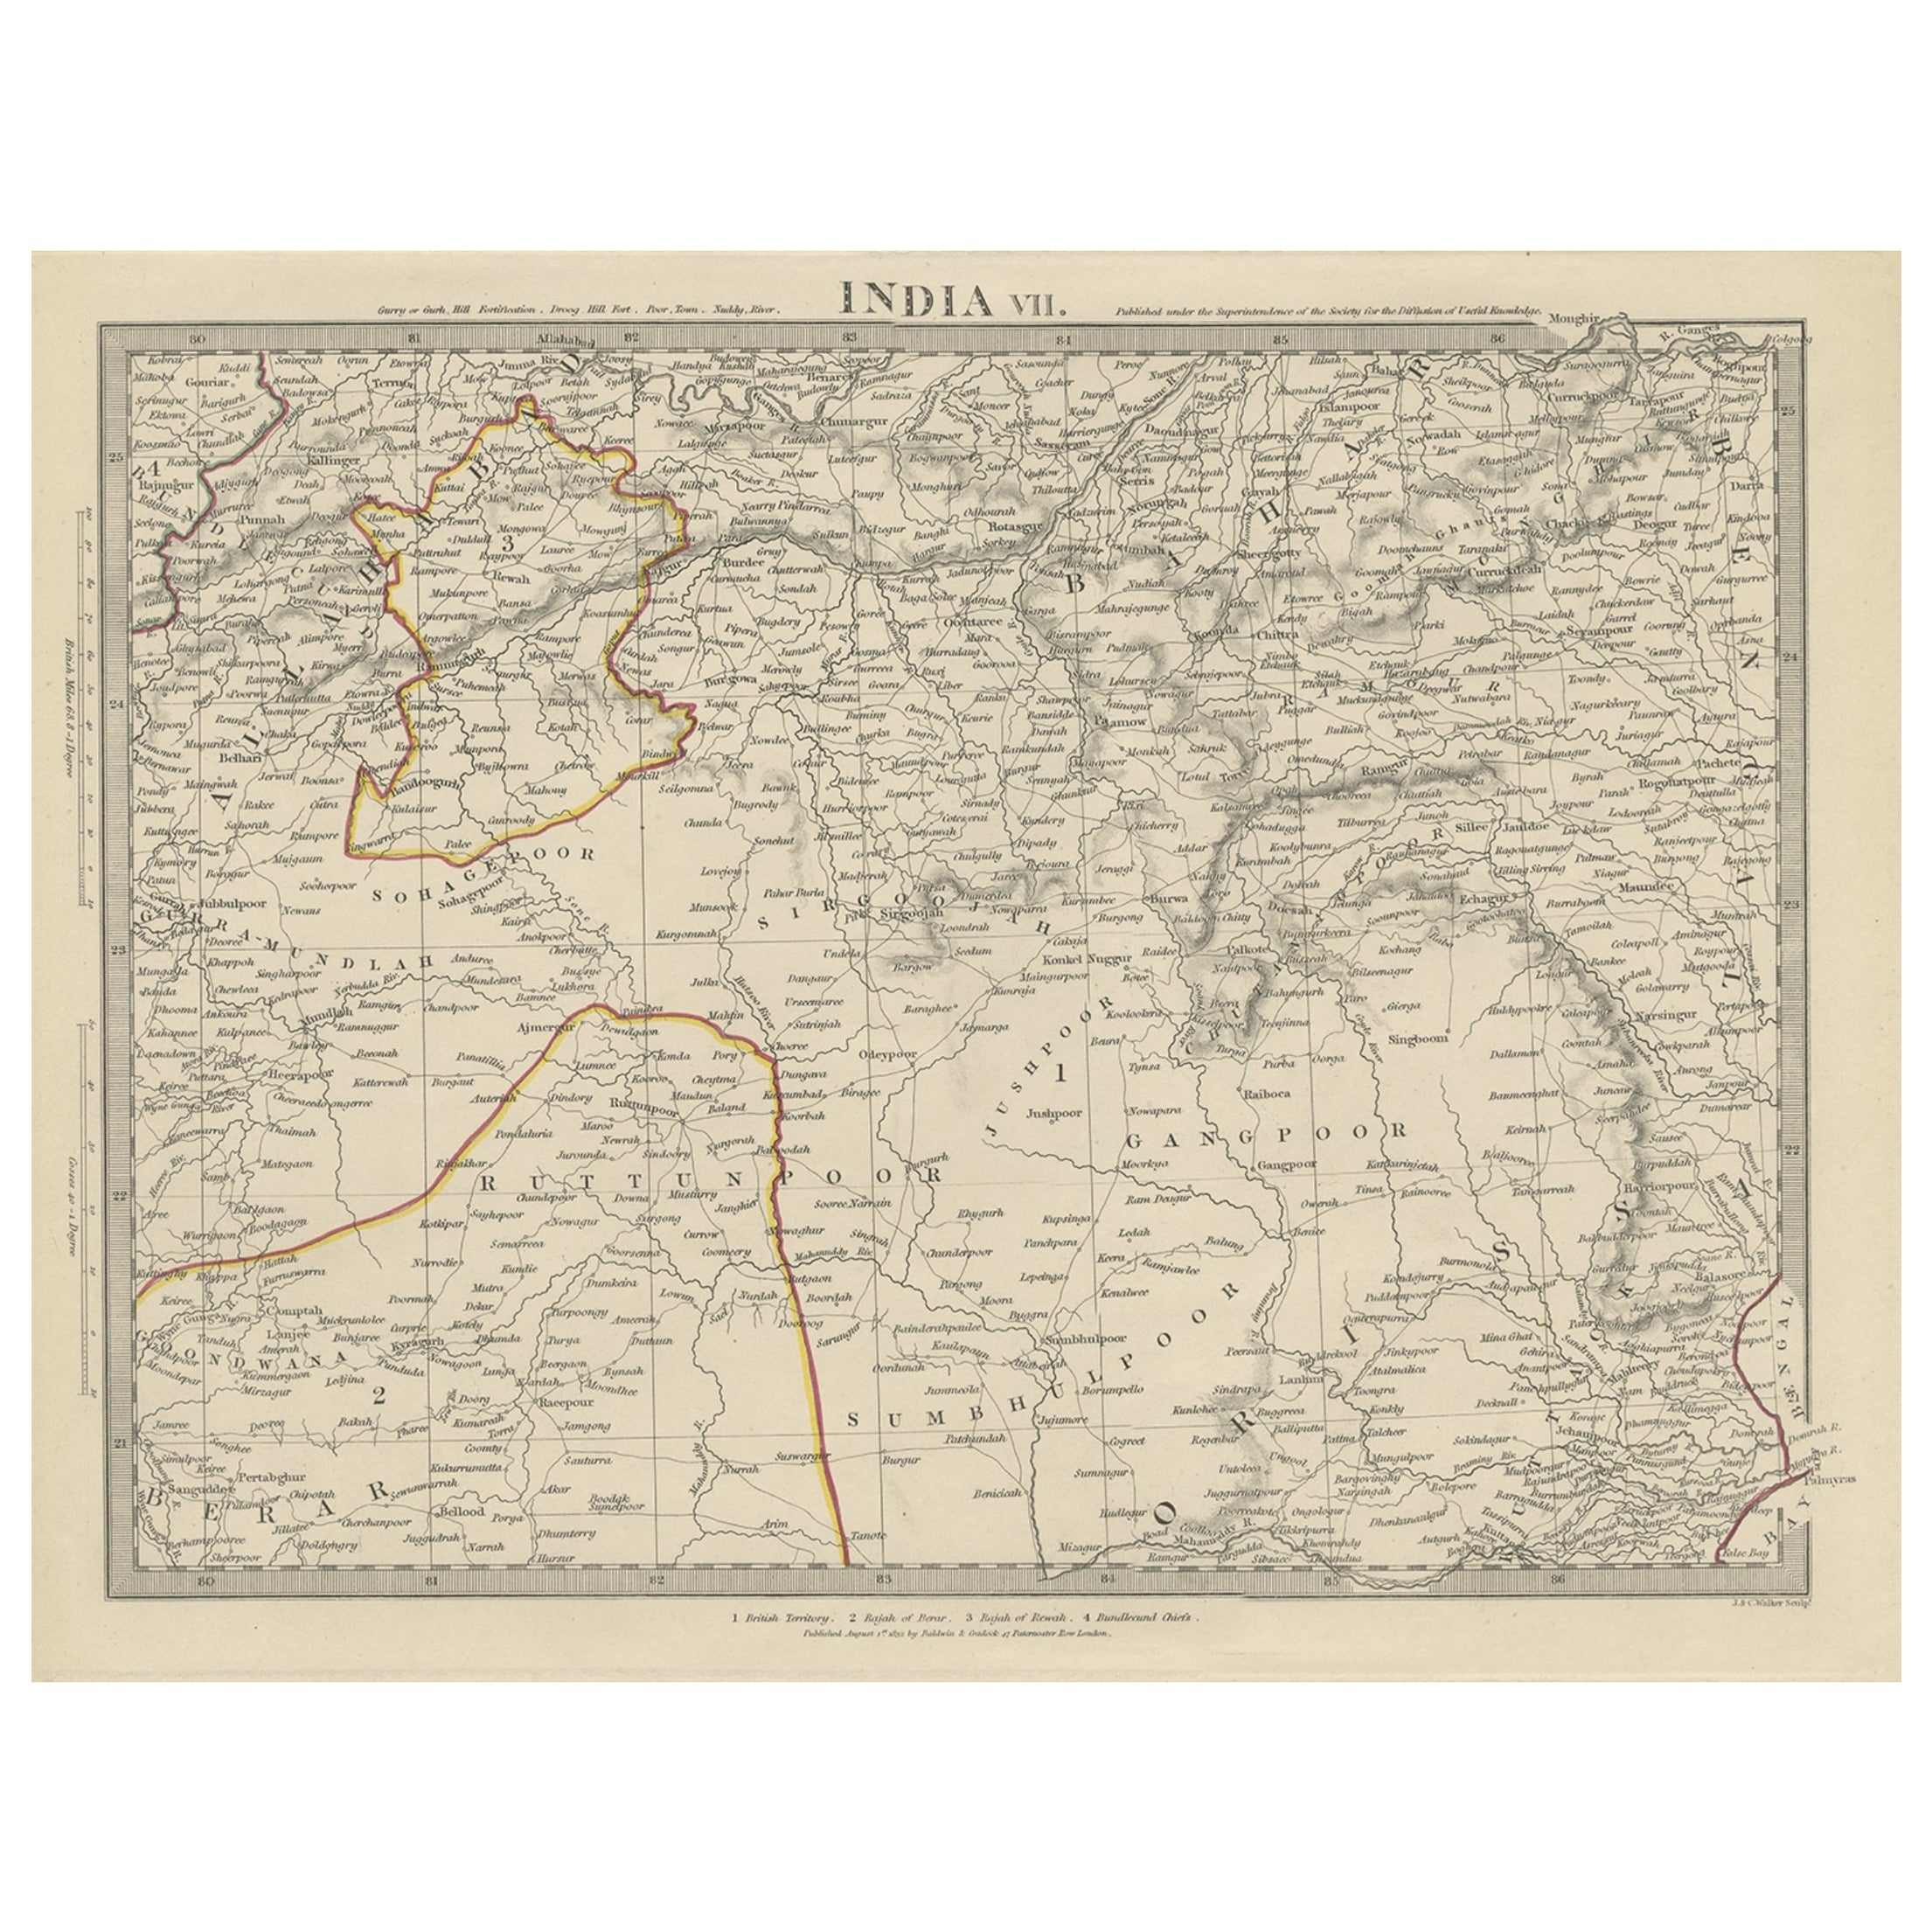 Antique Map of the Region of Berar and Rewah in India, 1832